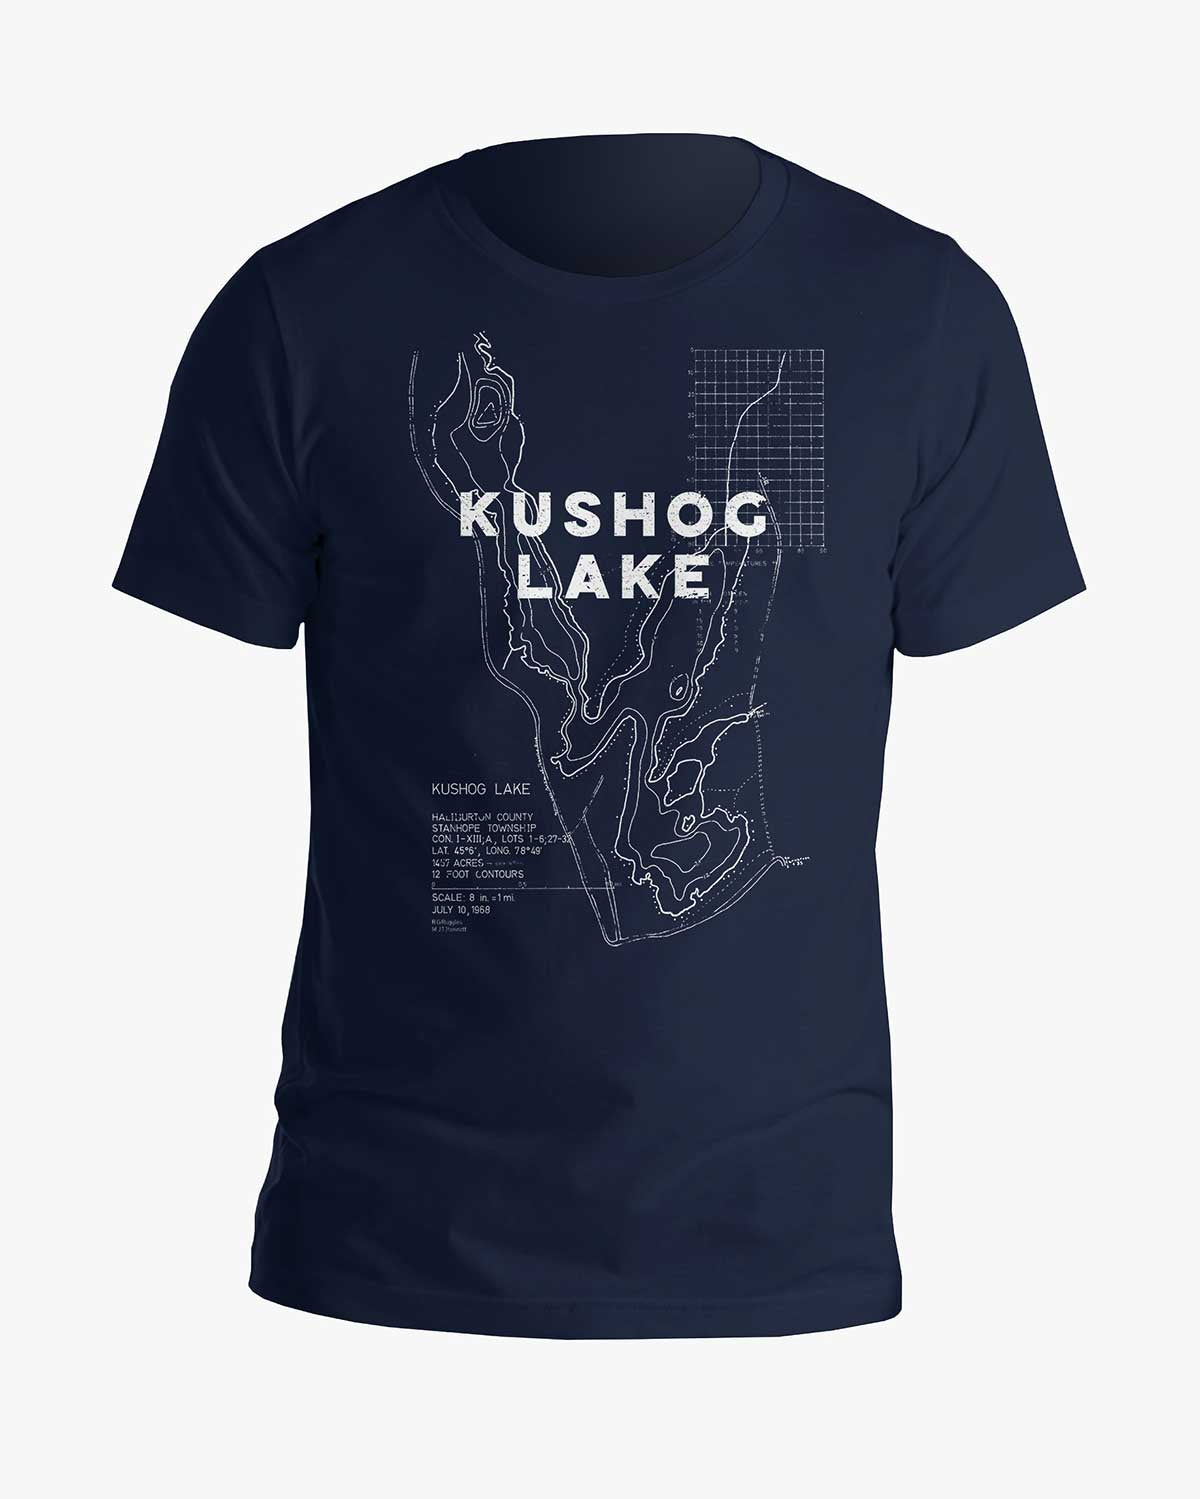 Lake Contours - Kushog Lake - Tee